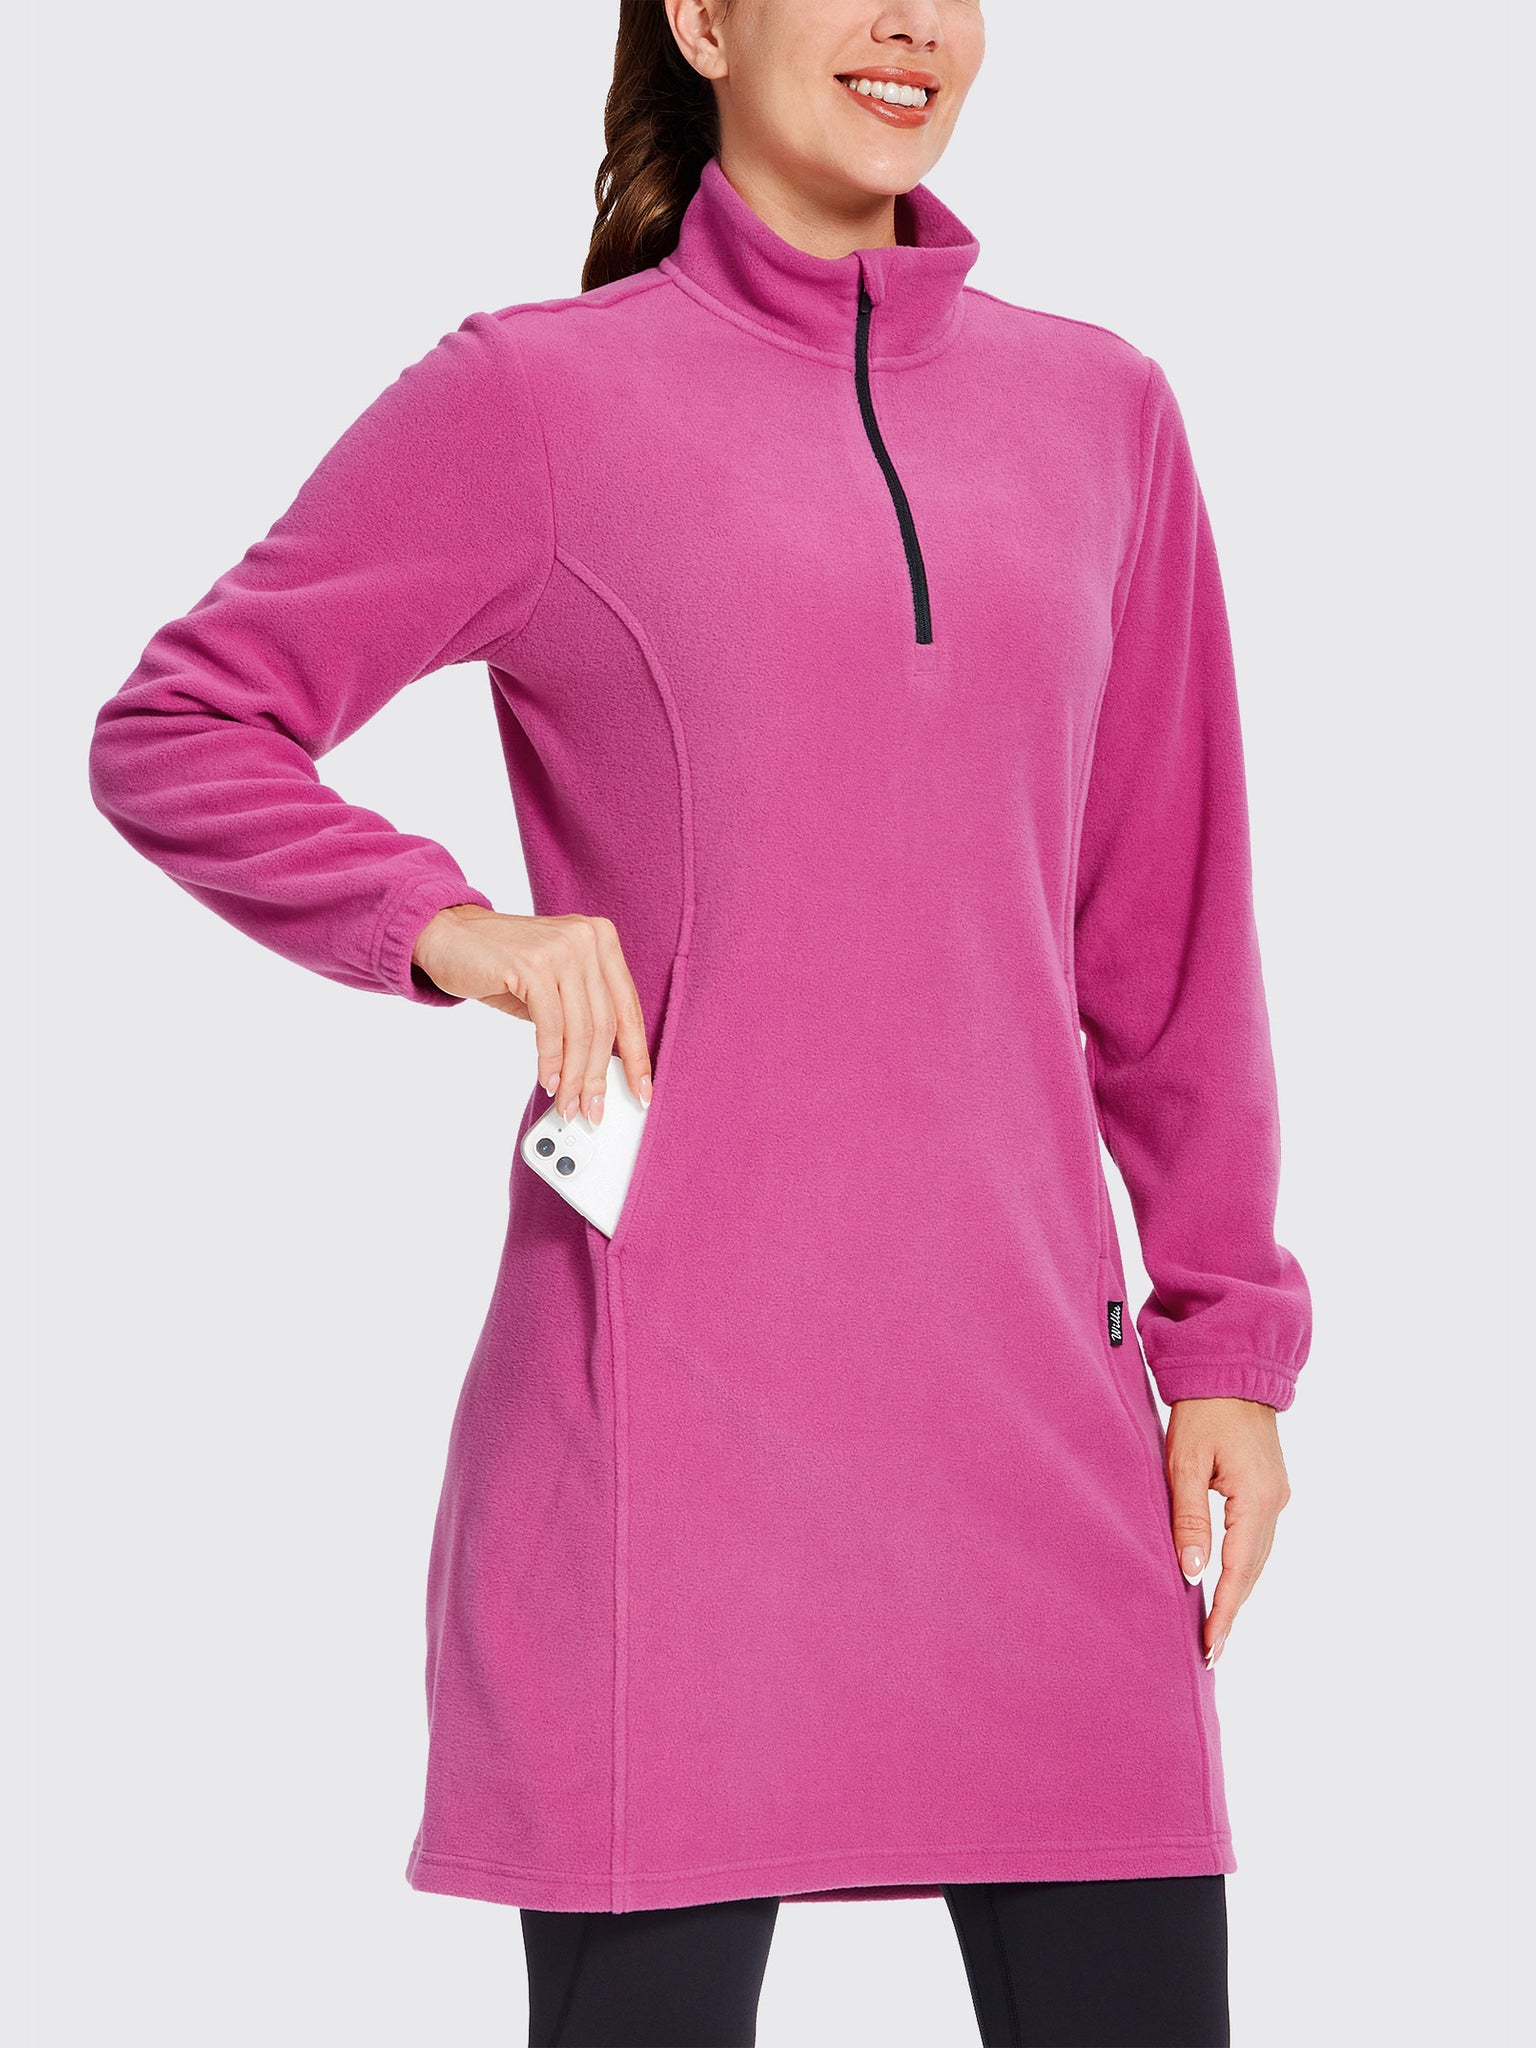 Women's Fleece Long-Sleeve Turtleneck Dress RosePink2